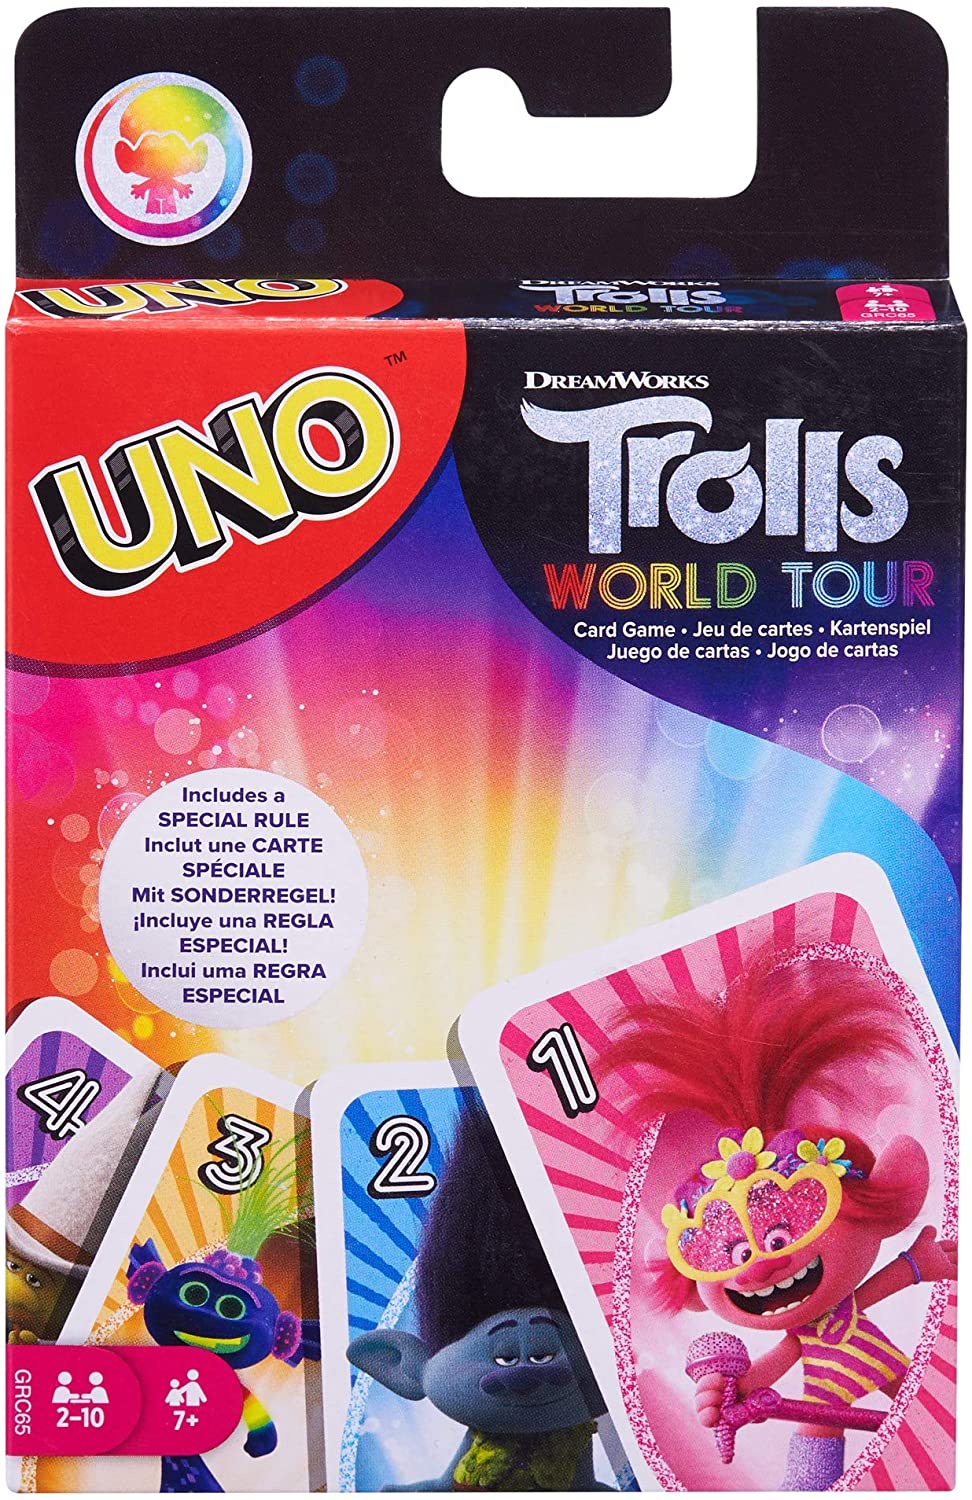 Mattel 2019 Uno Dreamworks Trolls World Tour Card Game